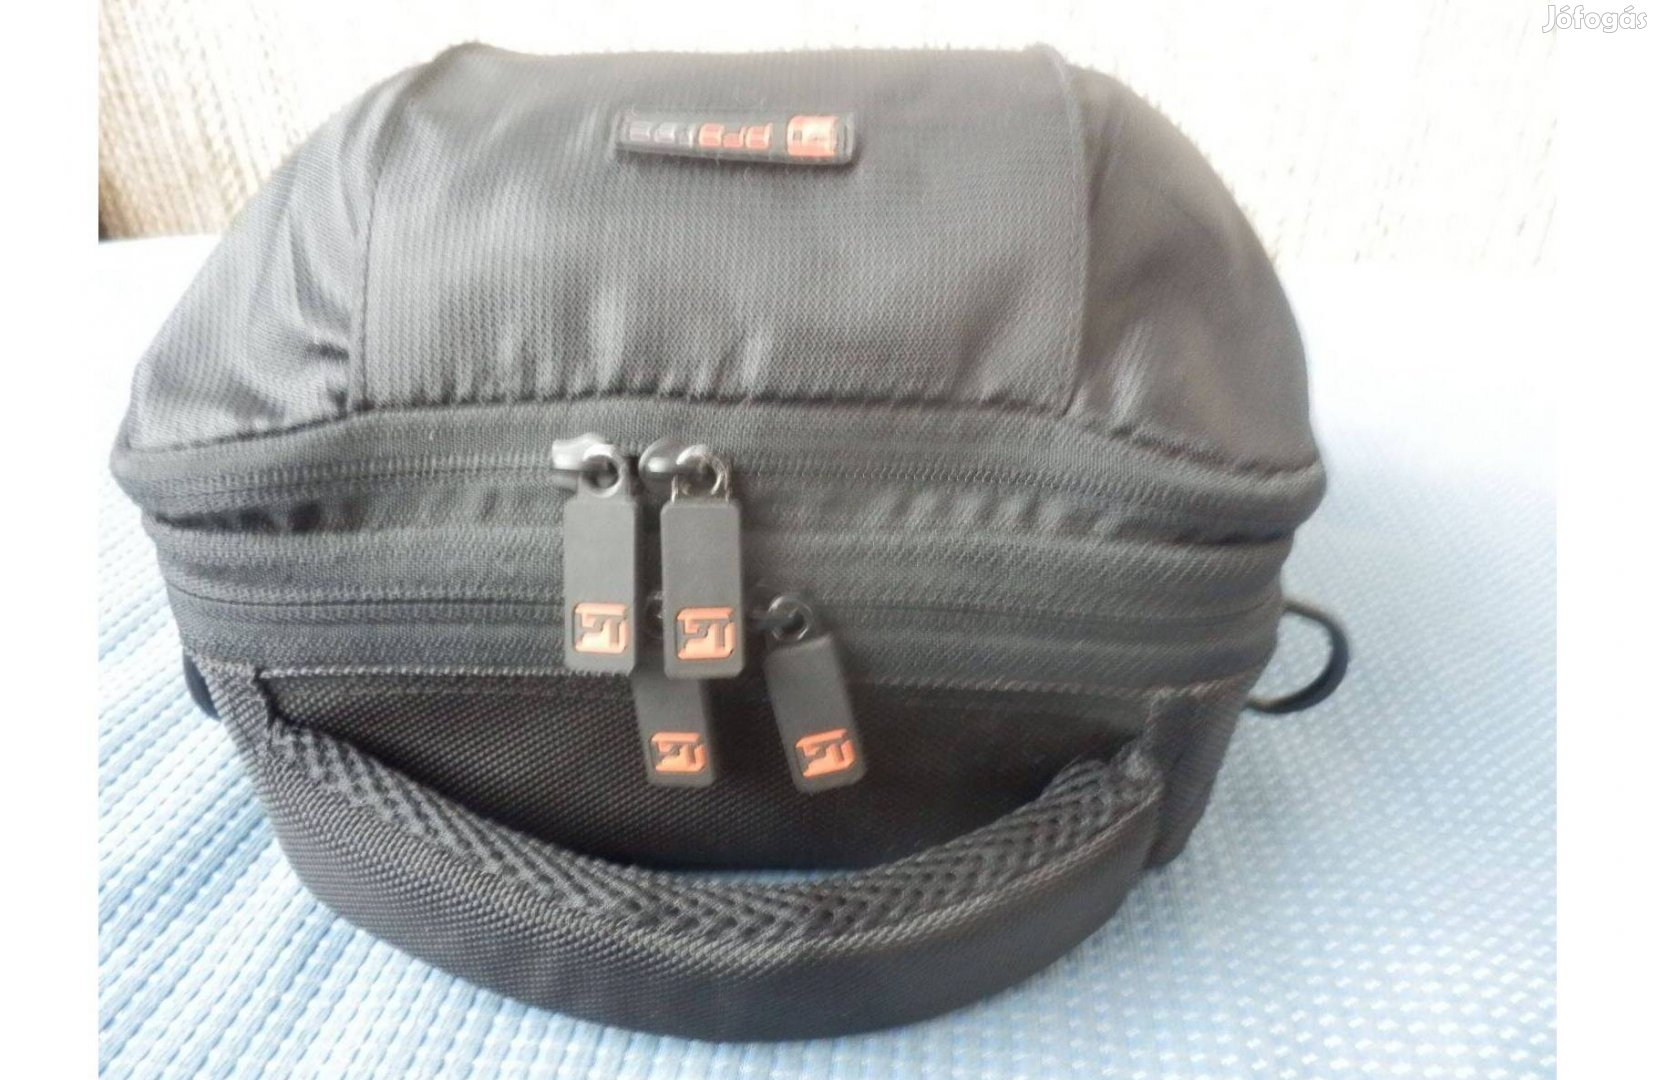 Protec PR910 speciális audio (hangrögzítő műszer tároló) táska